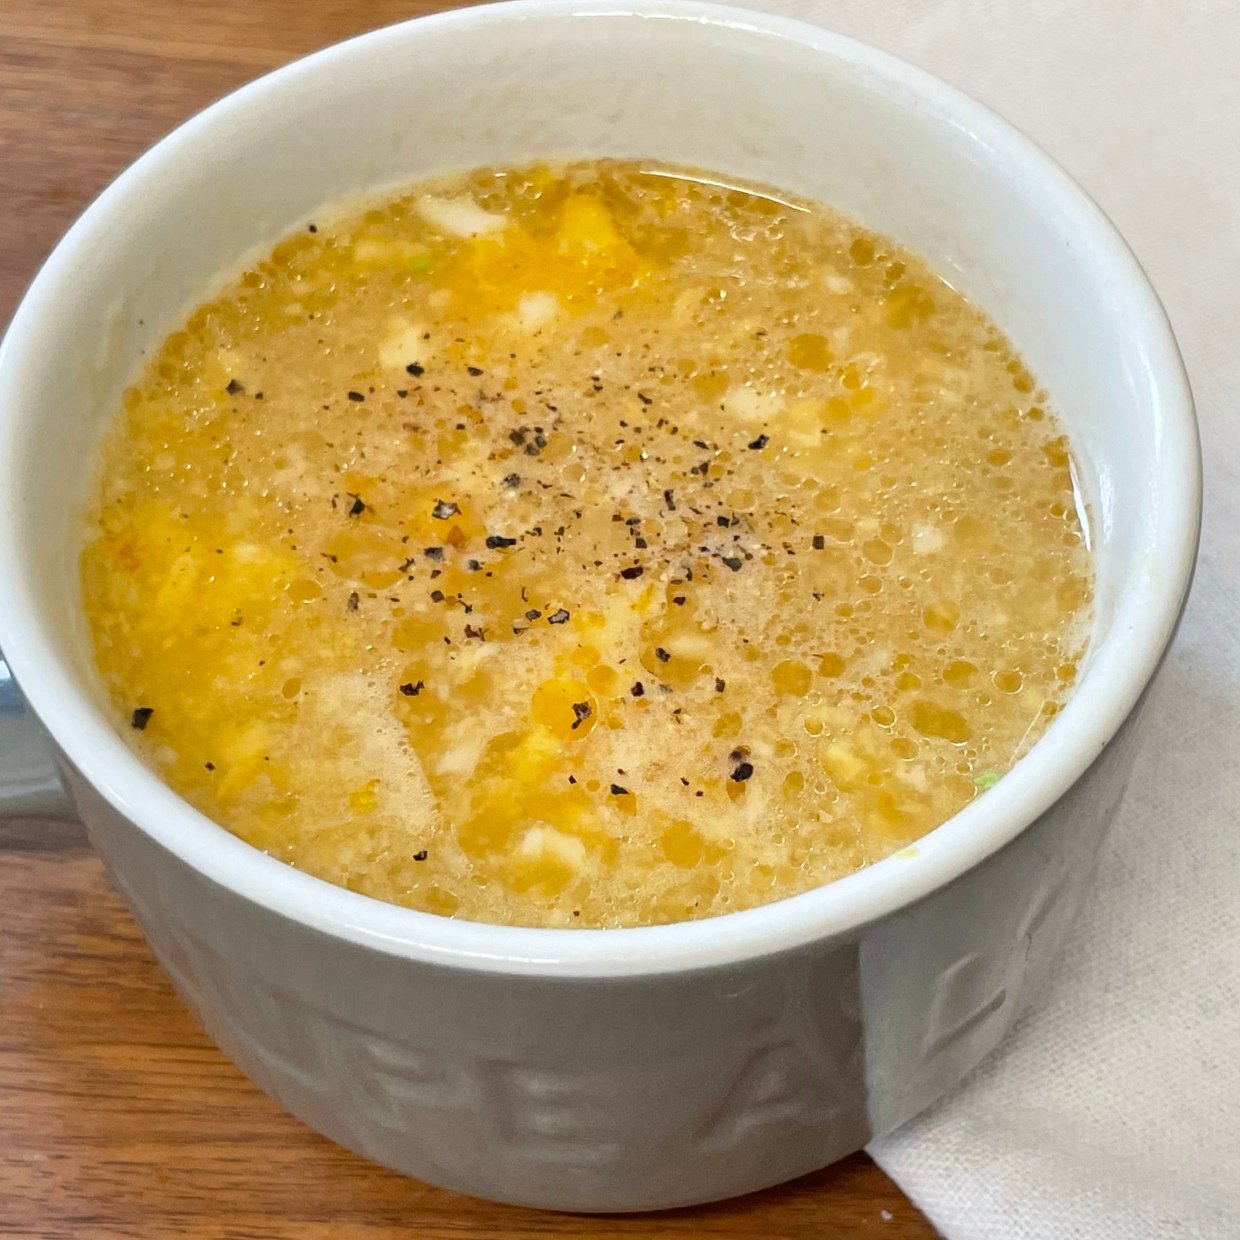  ふわふわ卵とコーンのスープ 